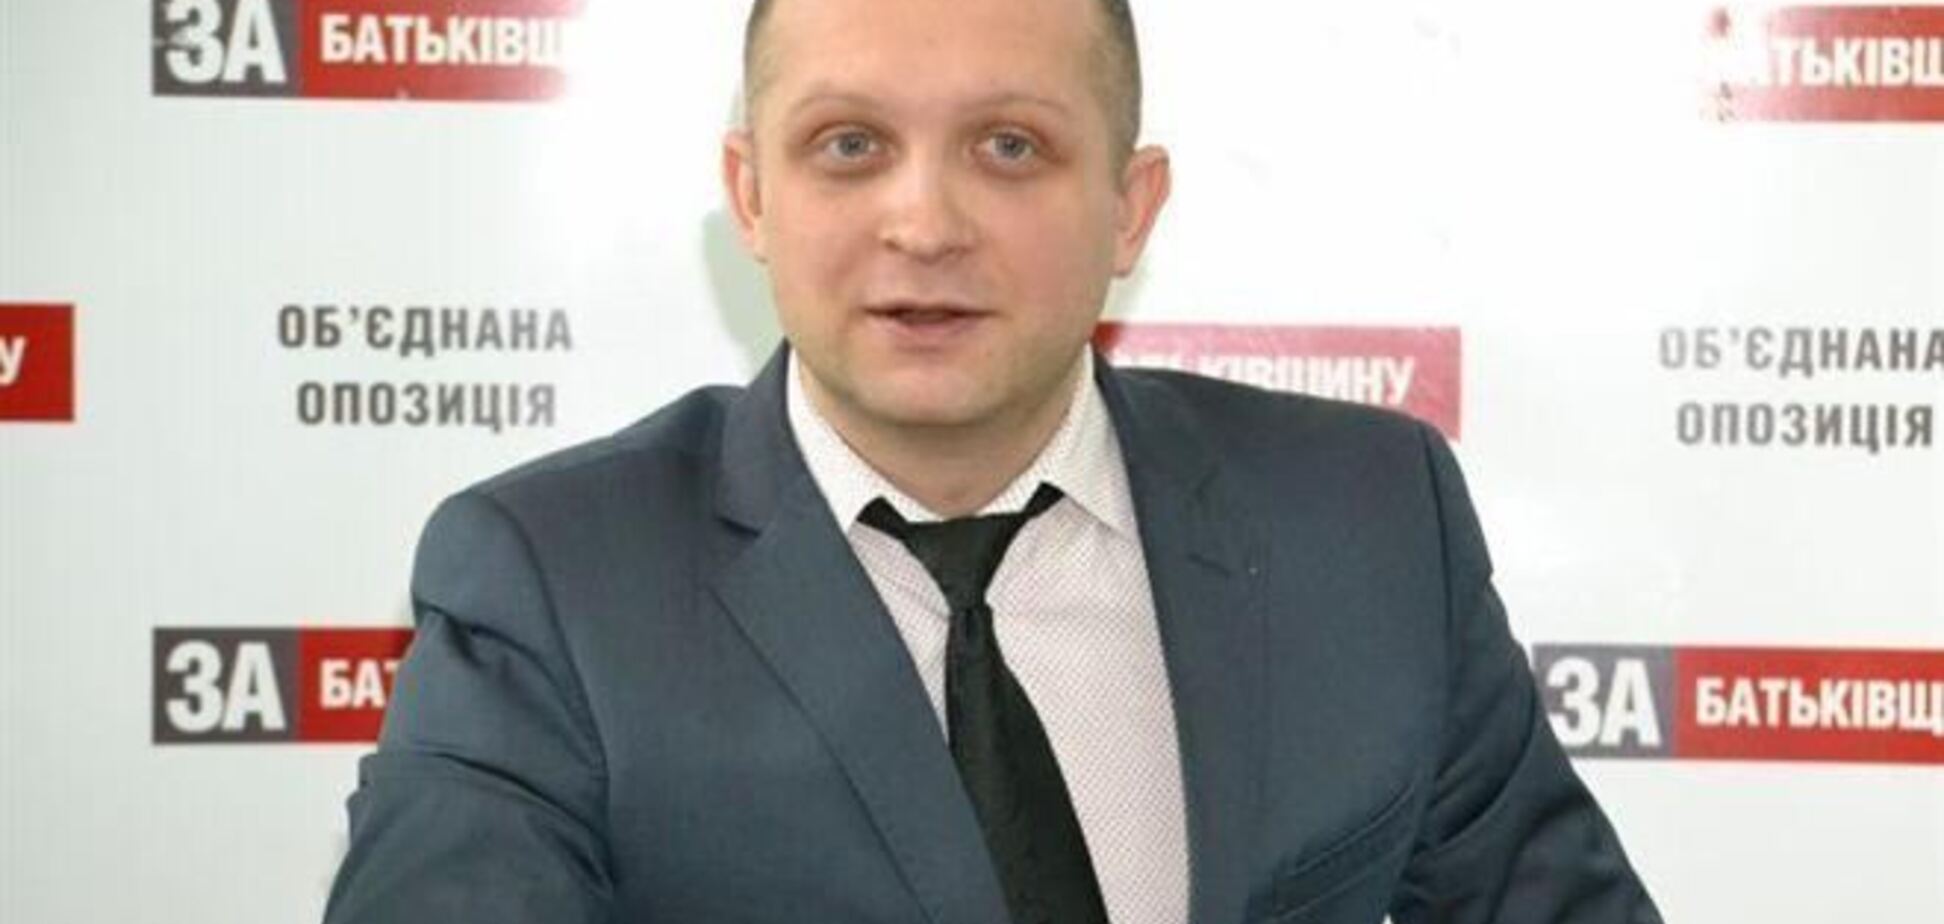 Максим Поляков з 'Батьківщини' не очолив Нацкомфінпослуг через скандал з 'Уманьхліб' - джерело в Кабміні